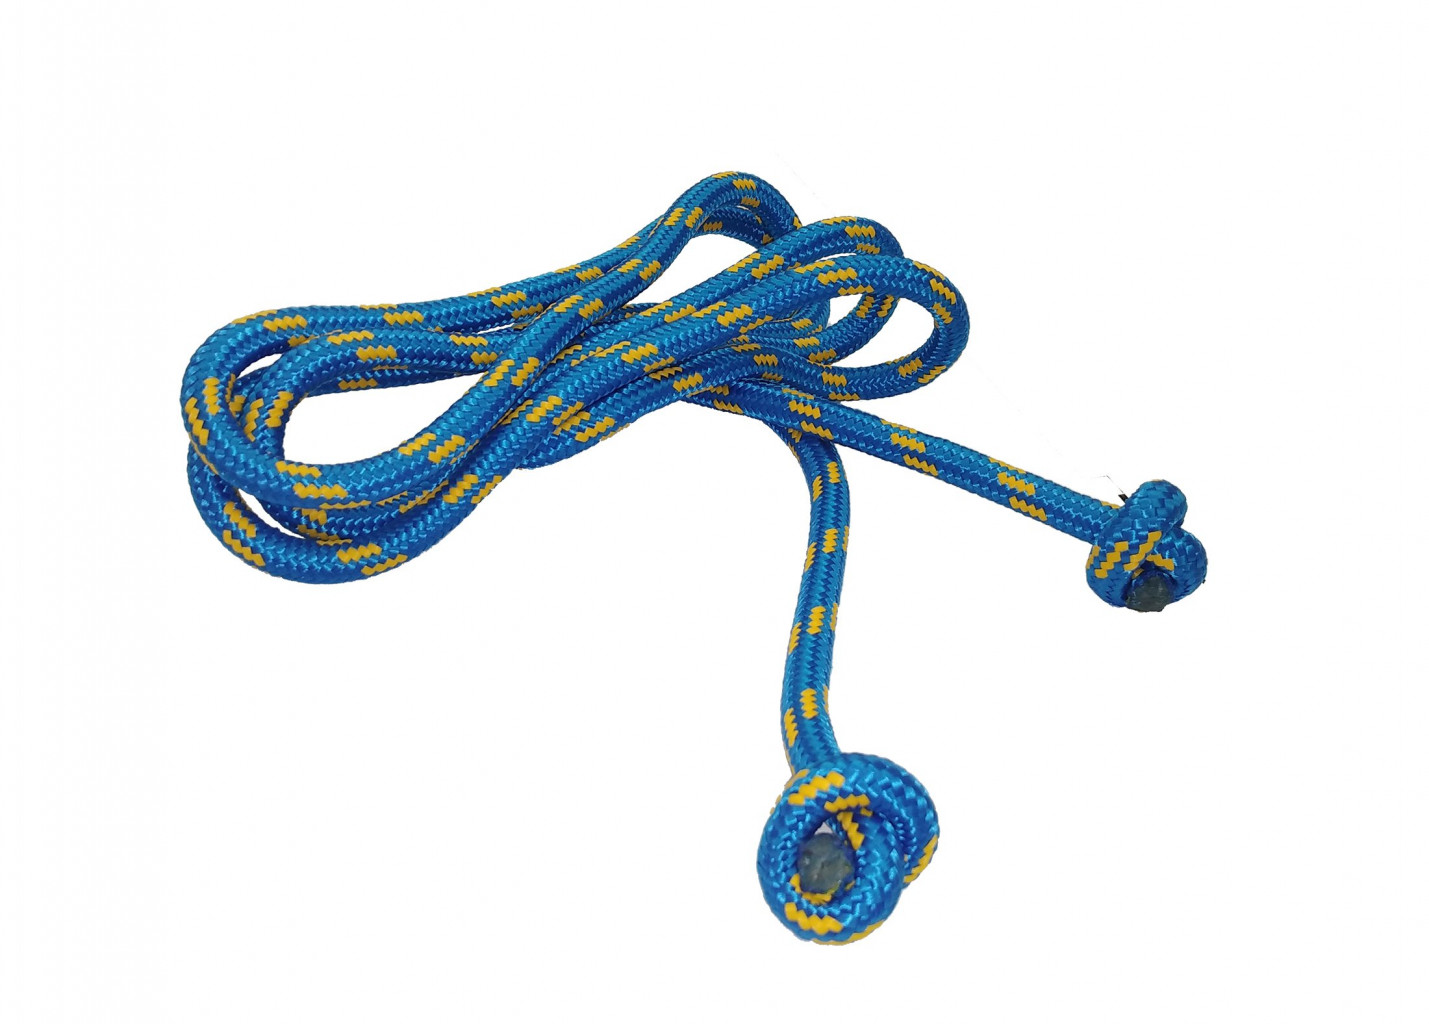 Gymnastické švihadlo PES 2,8 m SEDCO mix barev (modrá)